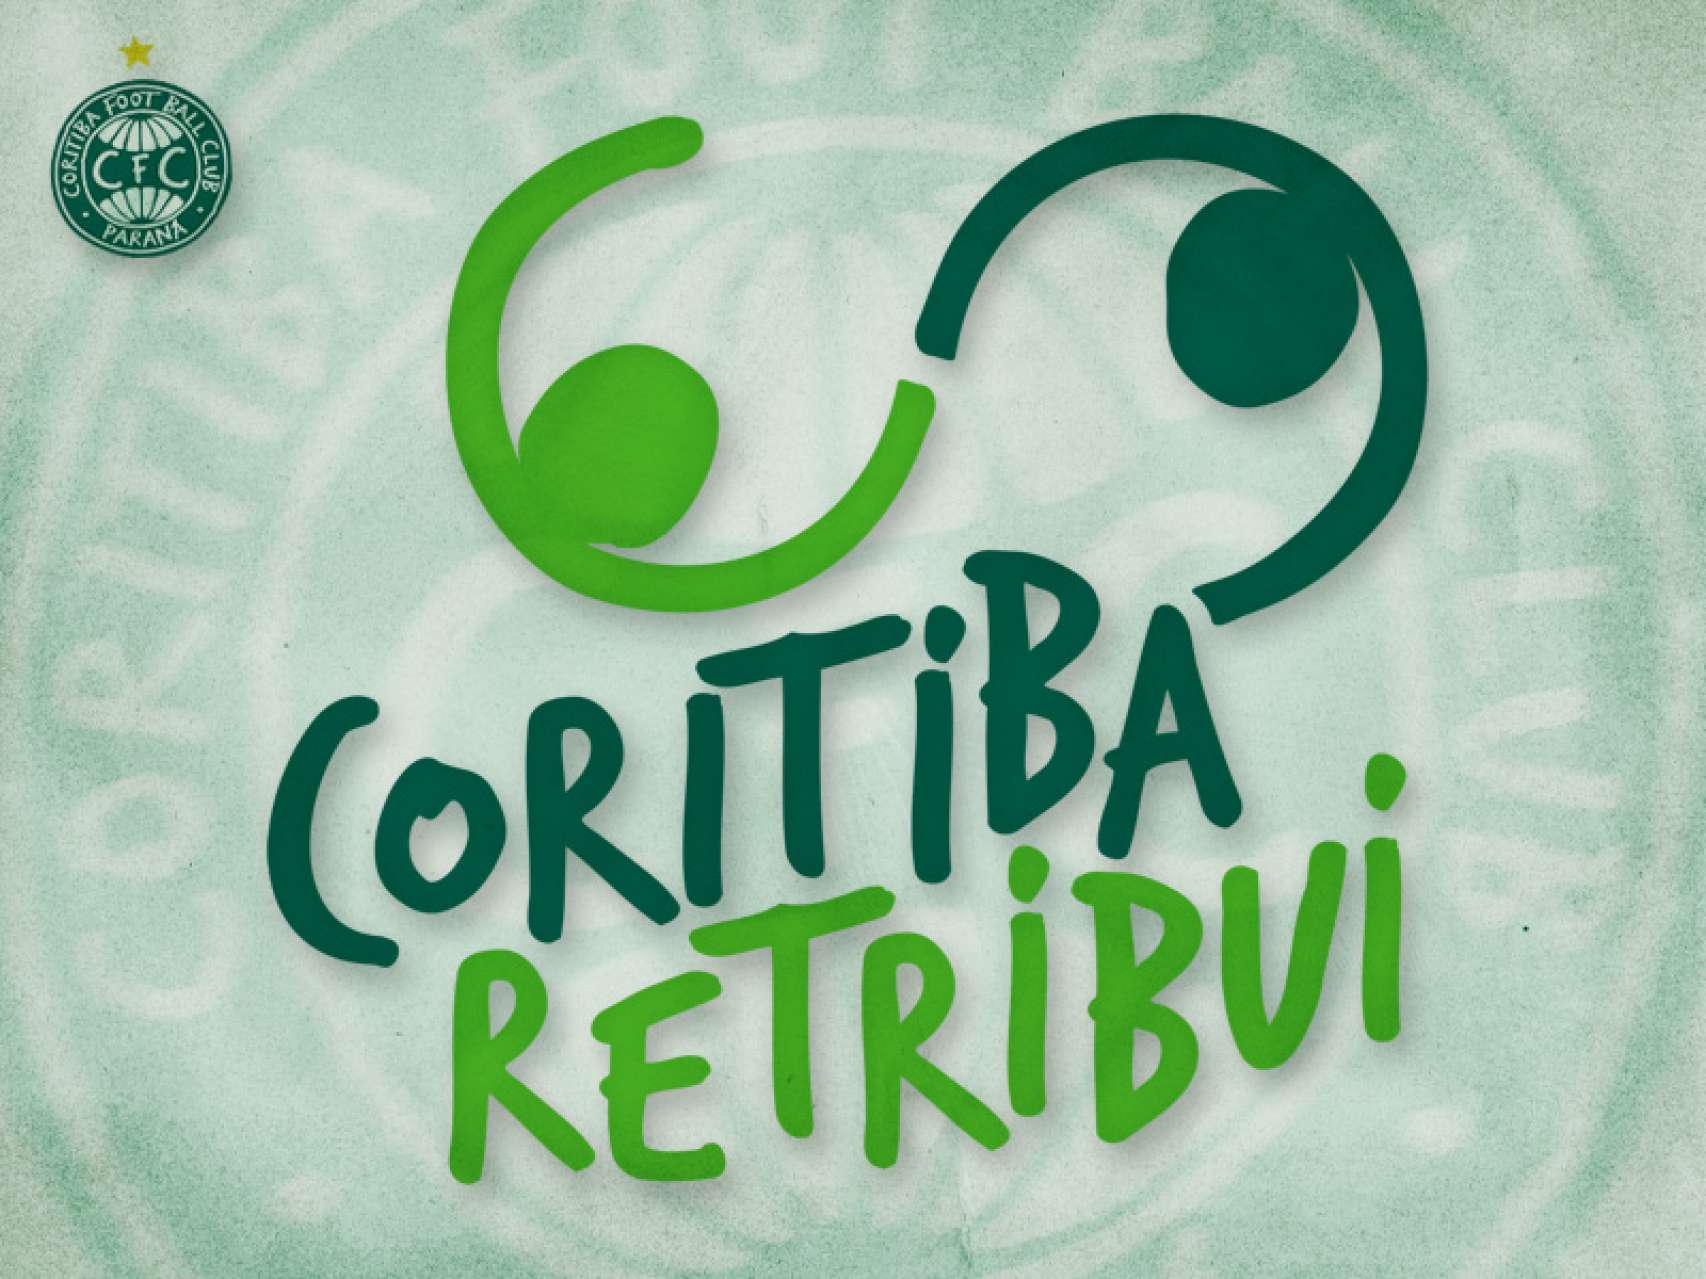 Coritiba Retribui apoia campanha Doe Sangue pelo Esporte